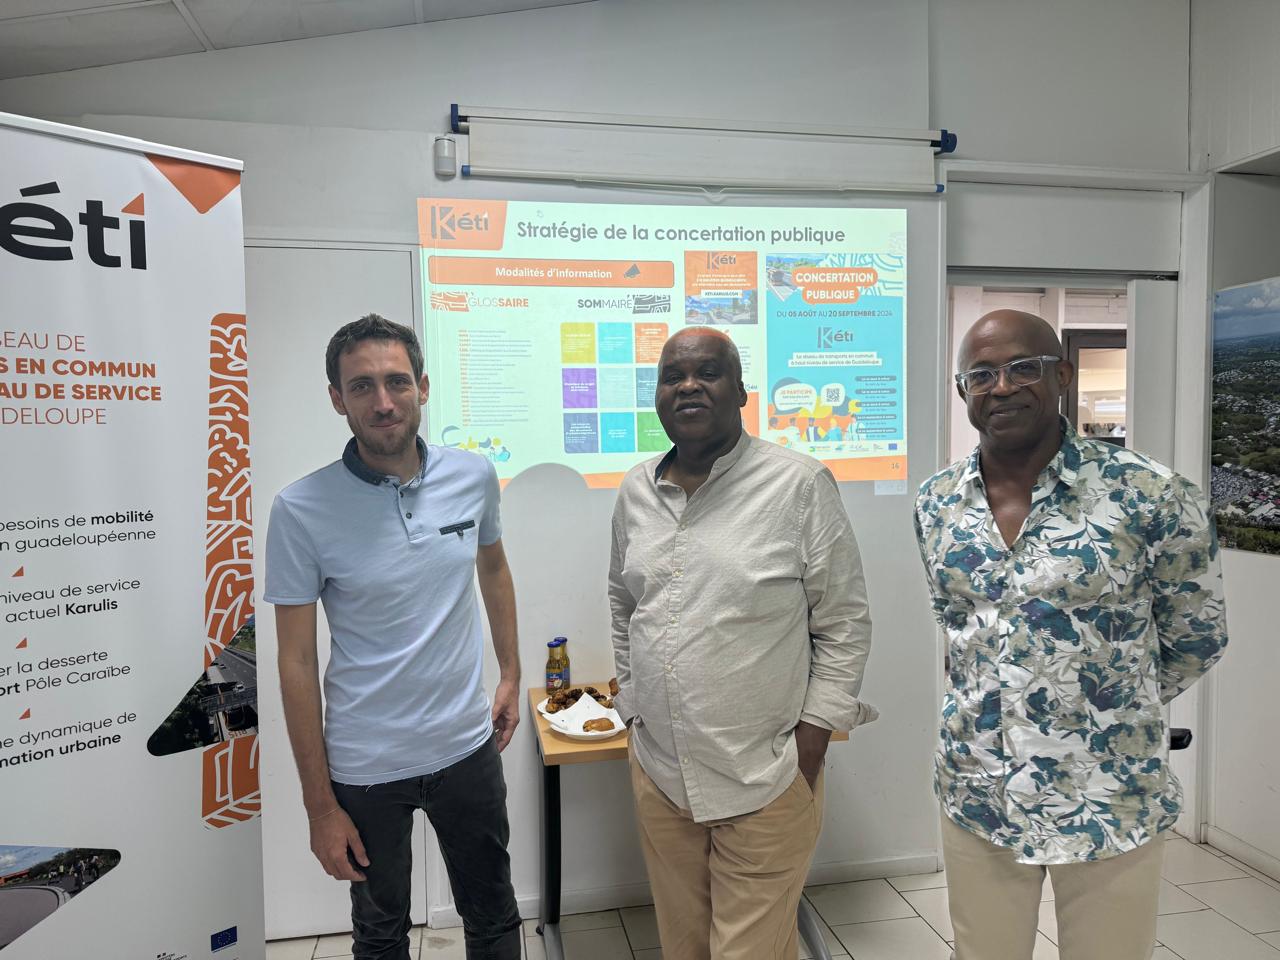     En projet, un nouveau réseau de transport en commun en Guadeloupe

